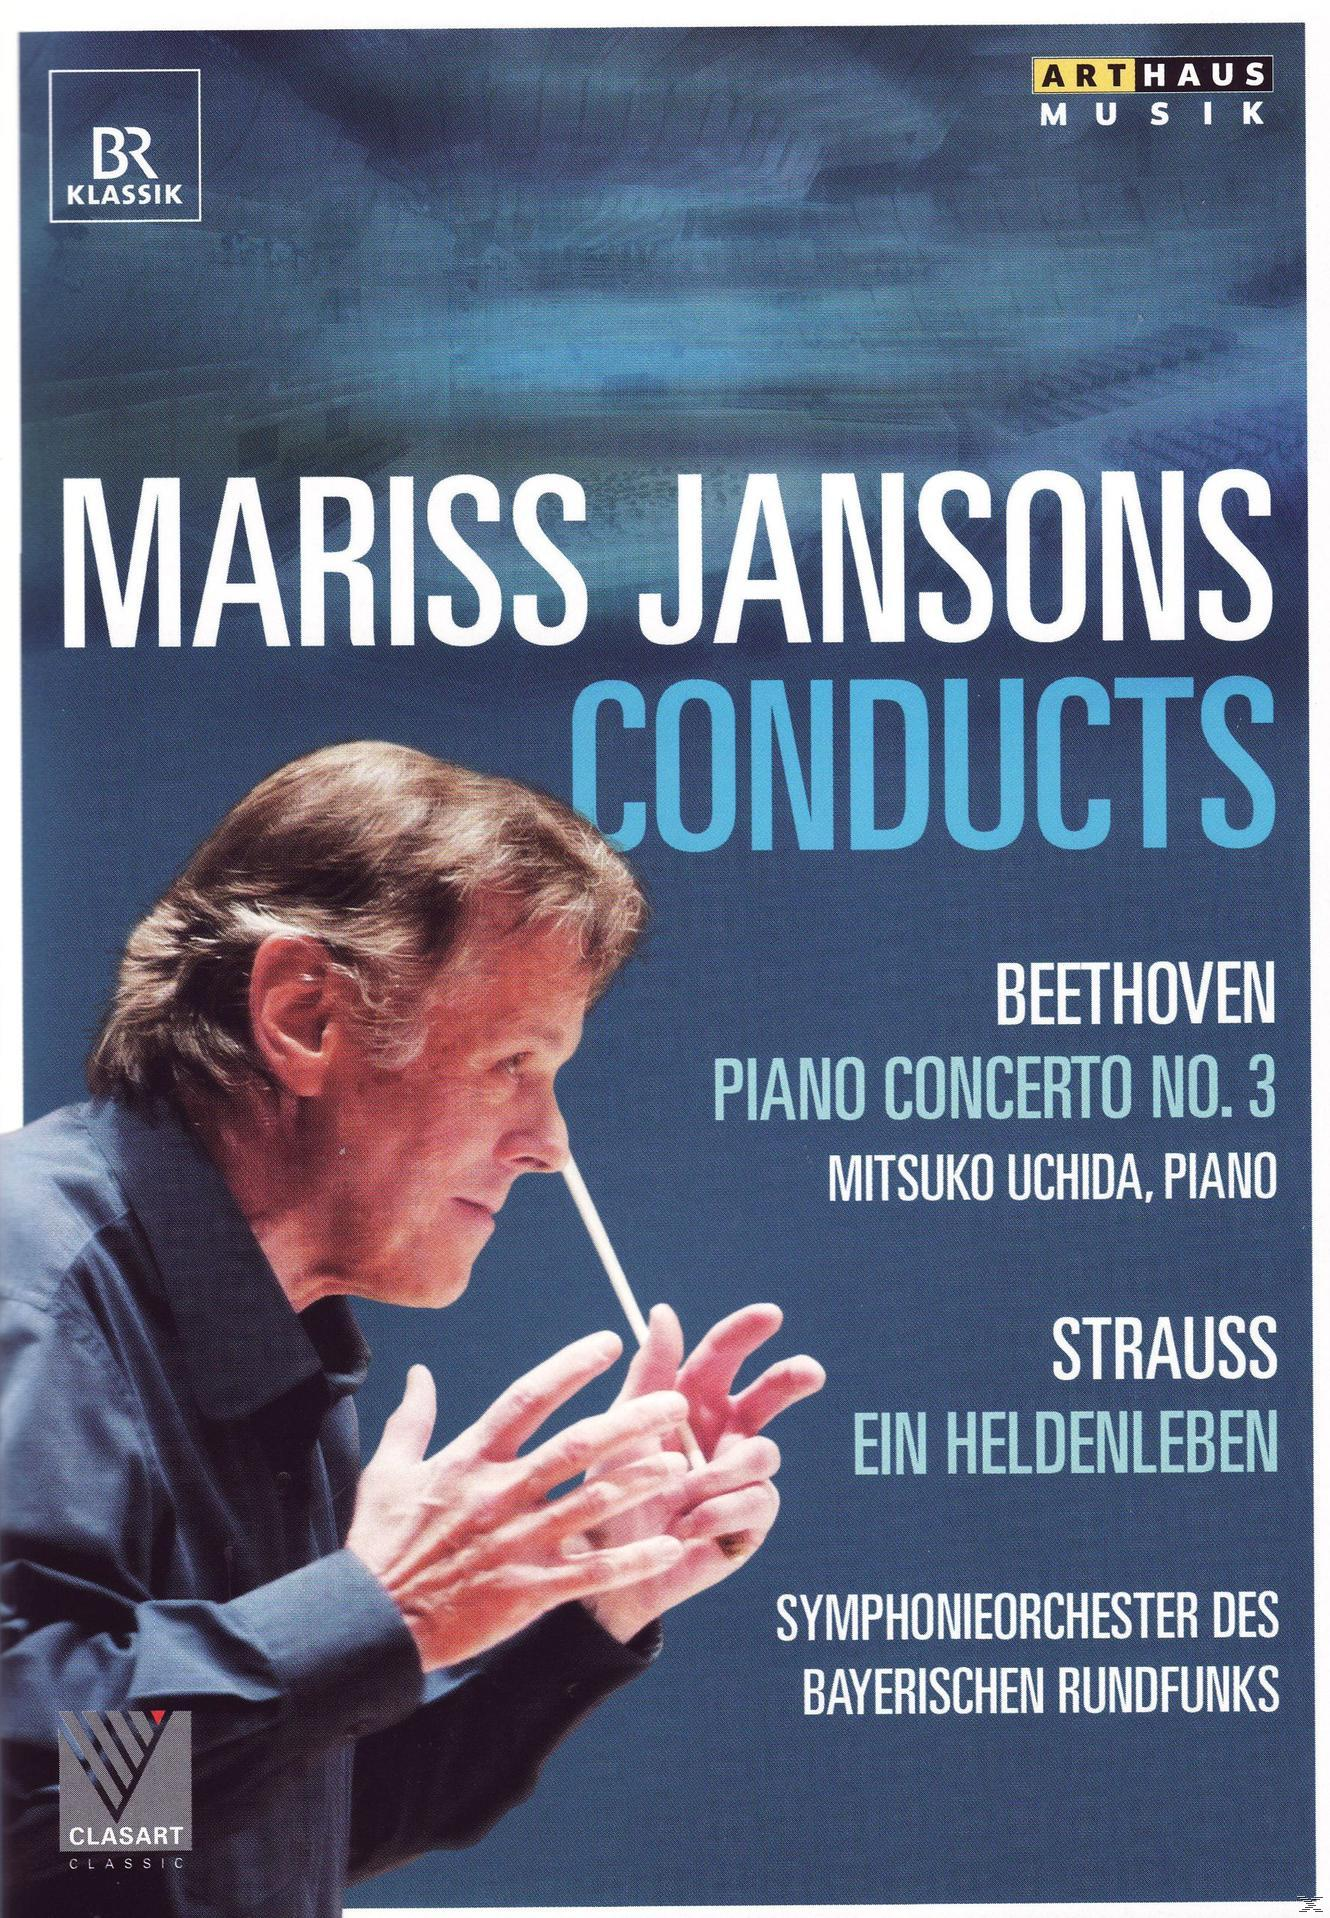 Symphonieorchester Des Jansons - - Bayerischen (DVD) Rundfunks Mariss Conducts